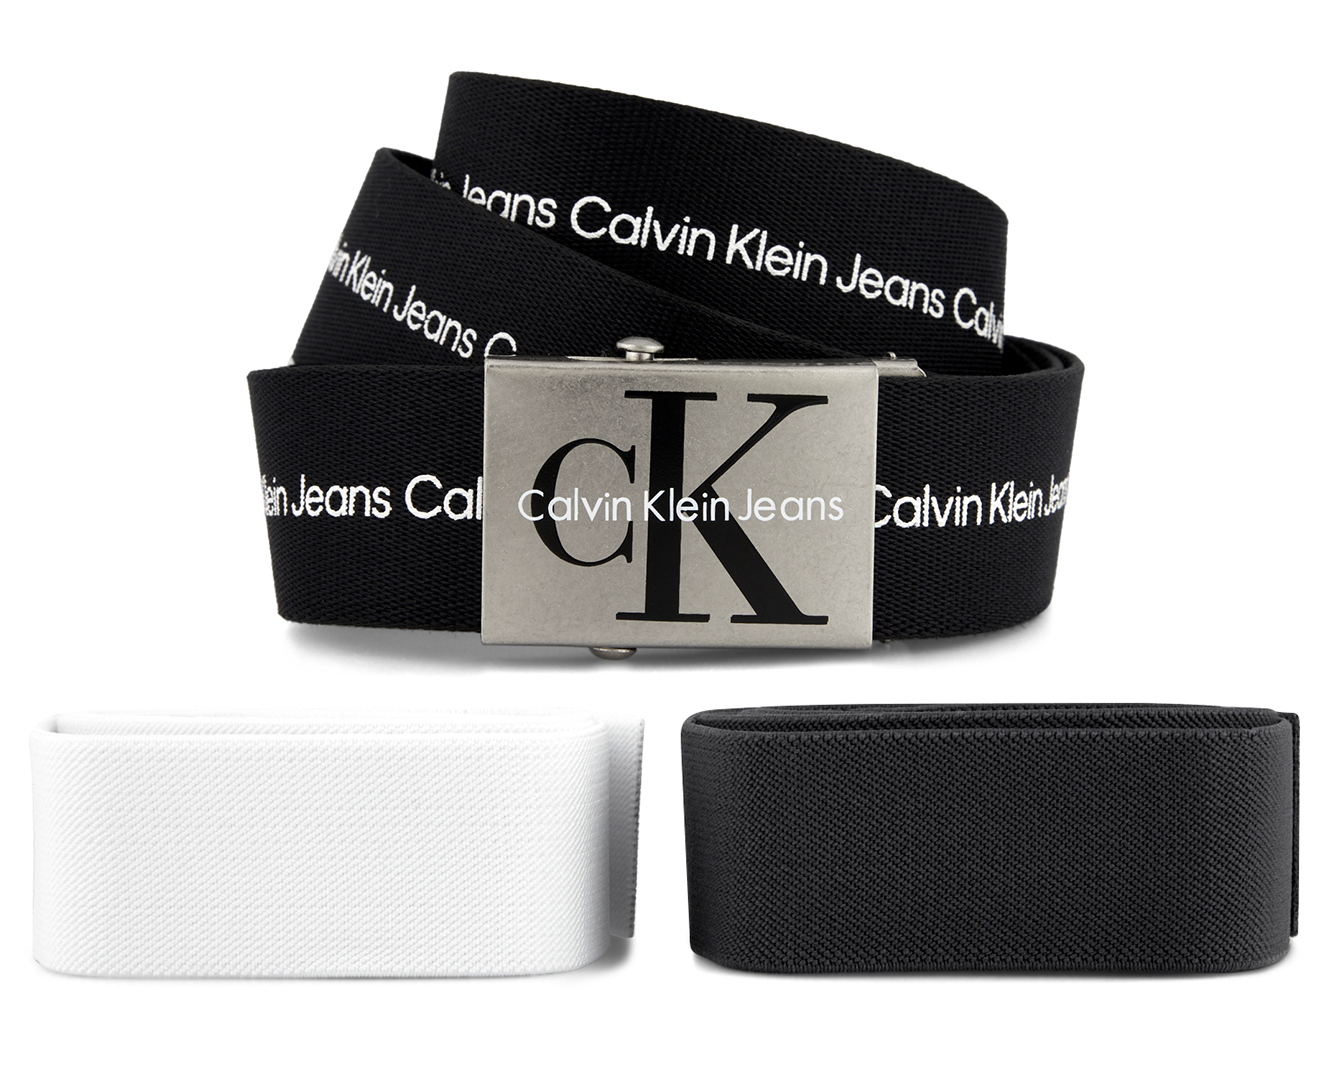 Calvin Klein Jeans Men's One Size Web Belt Set - Black/Dark Grey/White ...